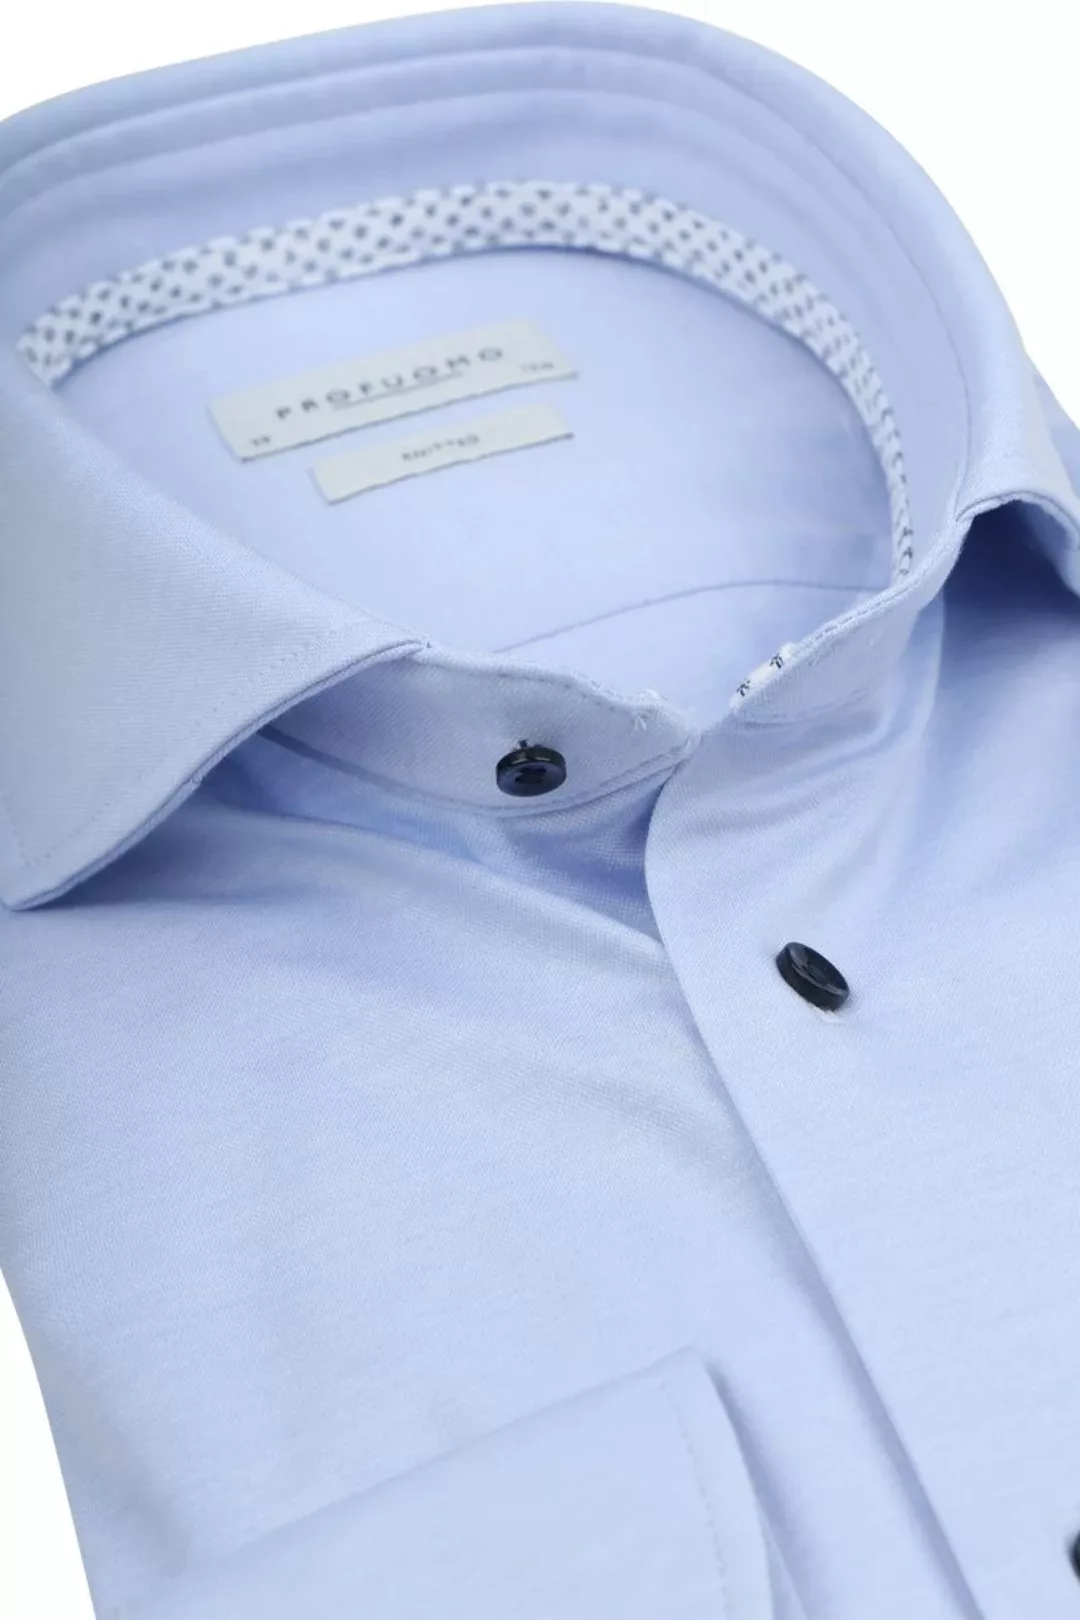 Profuomo Hemd Knitted Slim Fit Hellblau Melange - Größe 40 günstig online kaufen